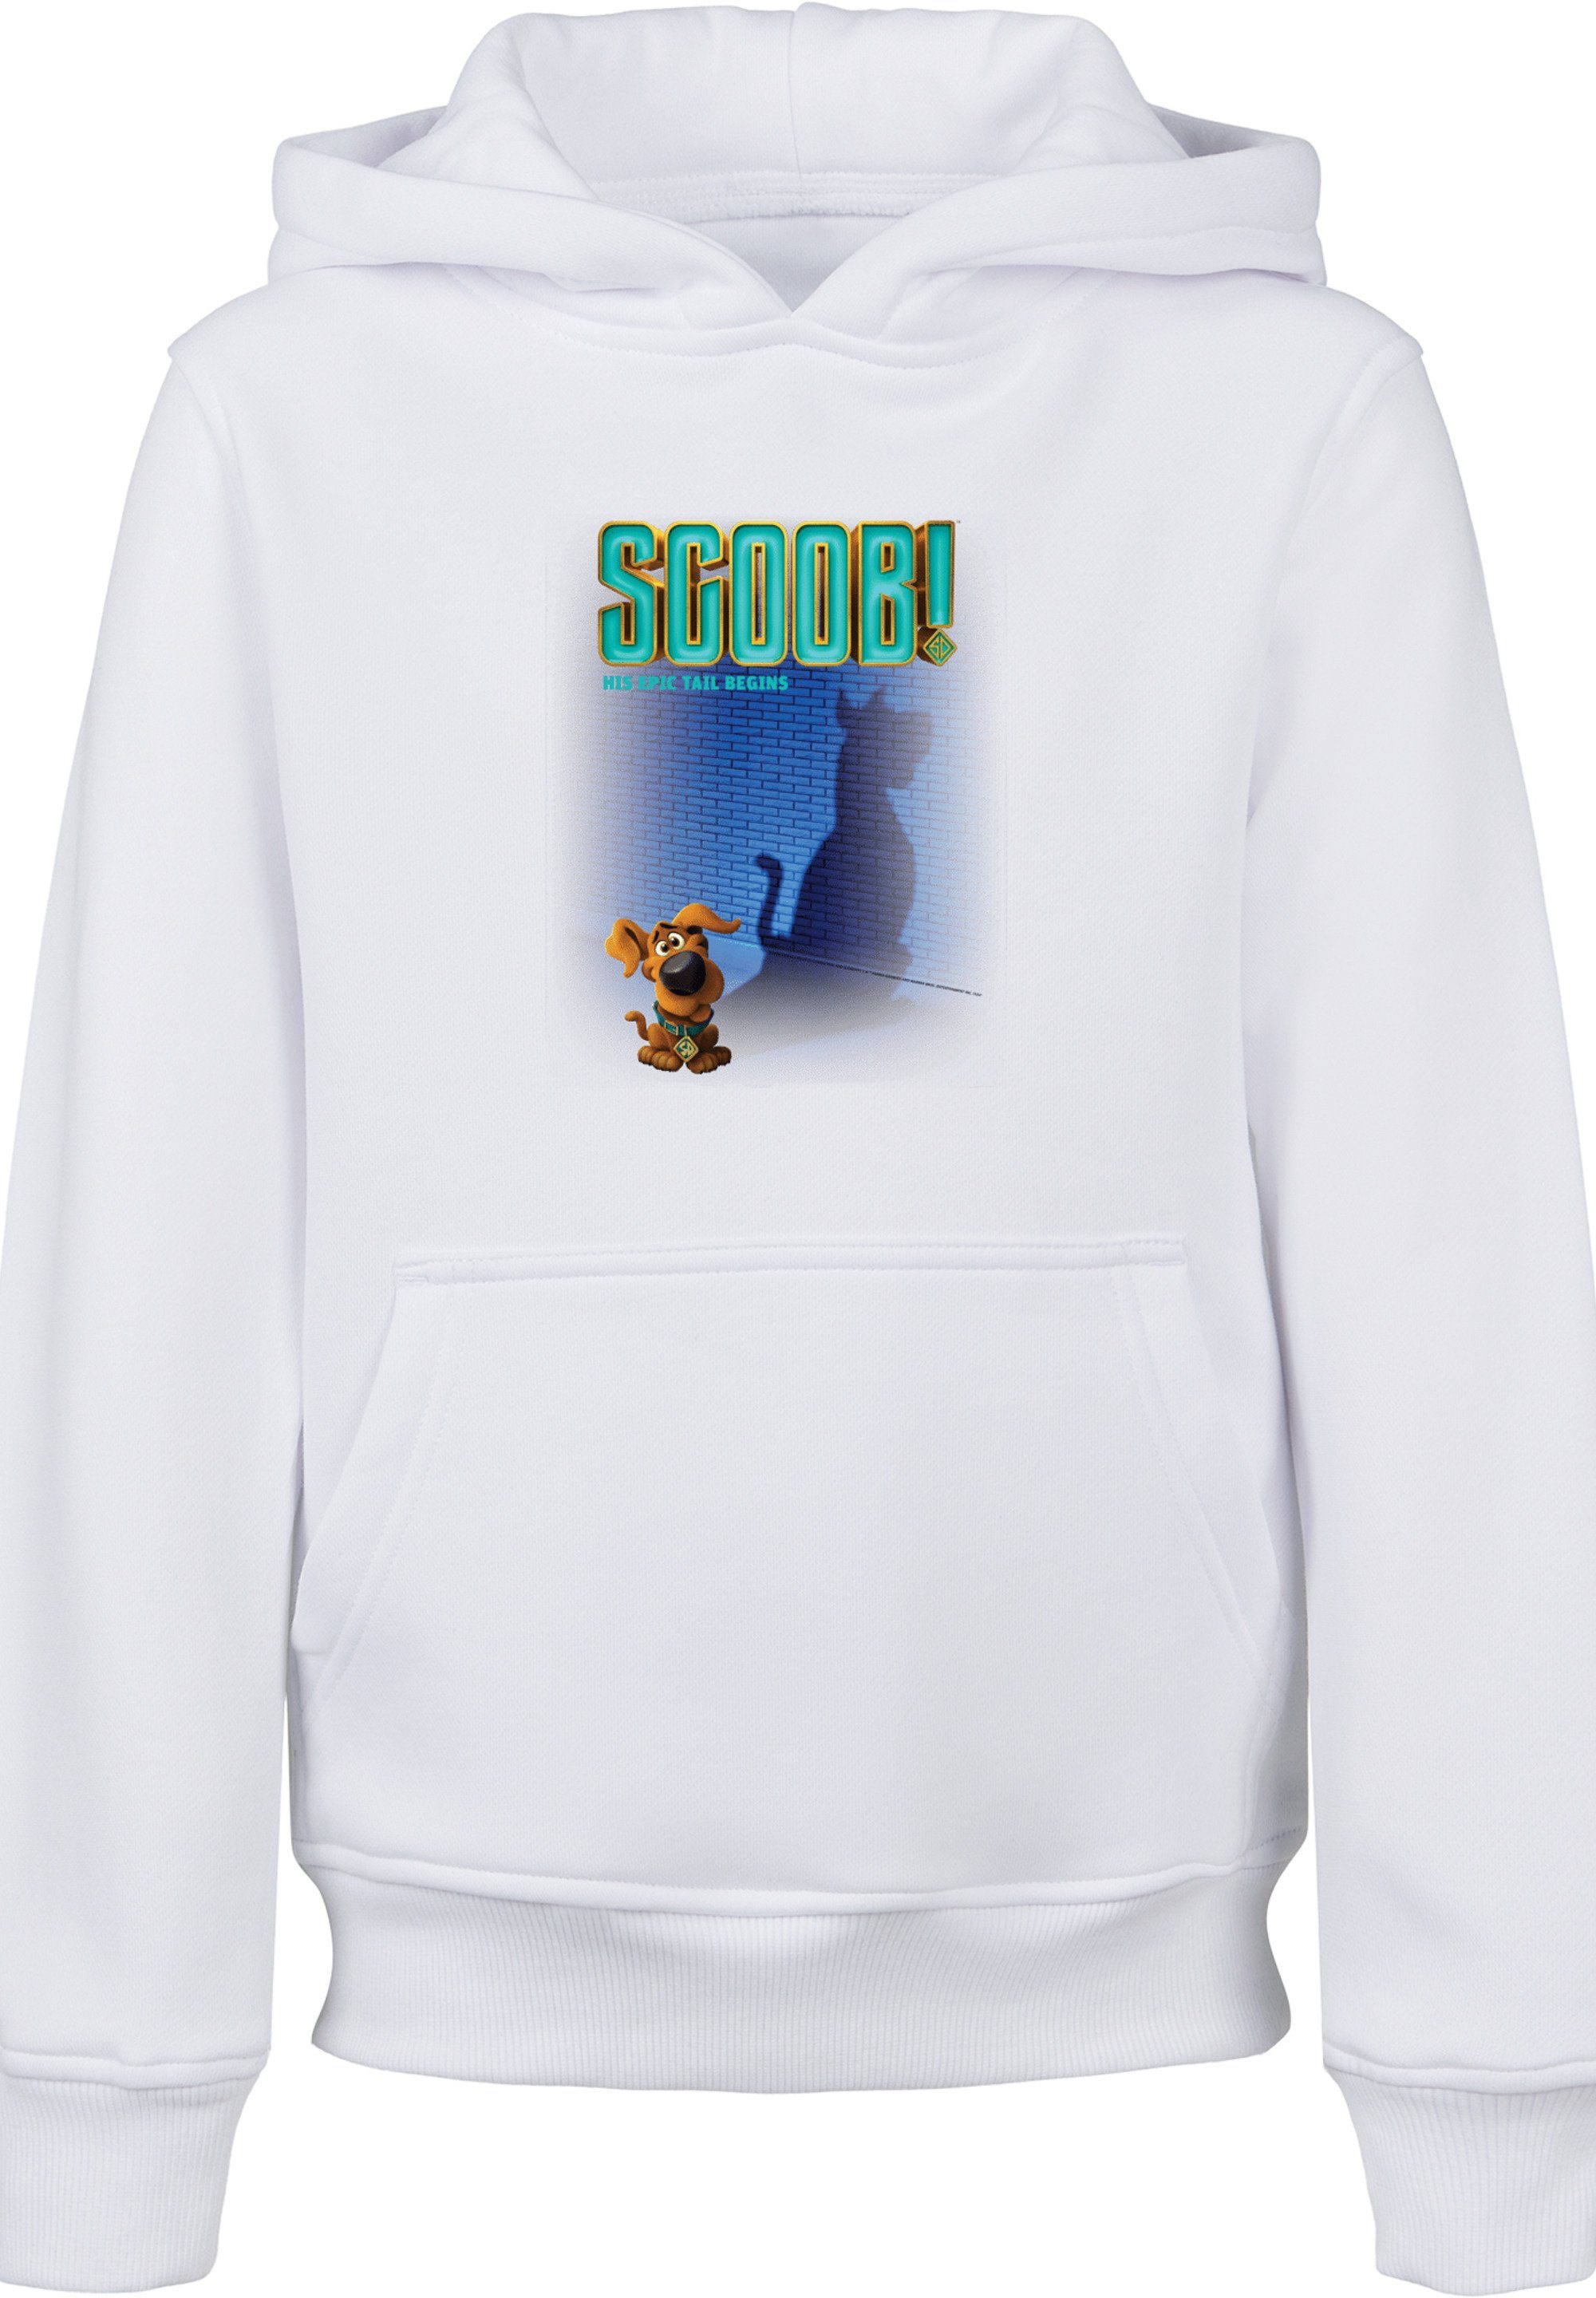 Doo F4NT4STIC Poster Scooby Unisex Sweatshirt Movie Merch,Jungen,Mädchen,Bedruckt Kinder,Premium